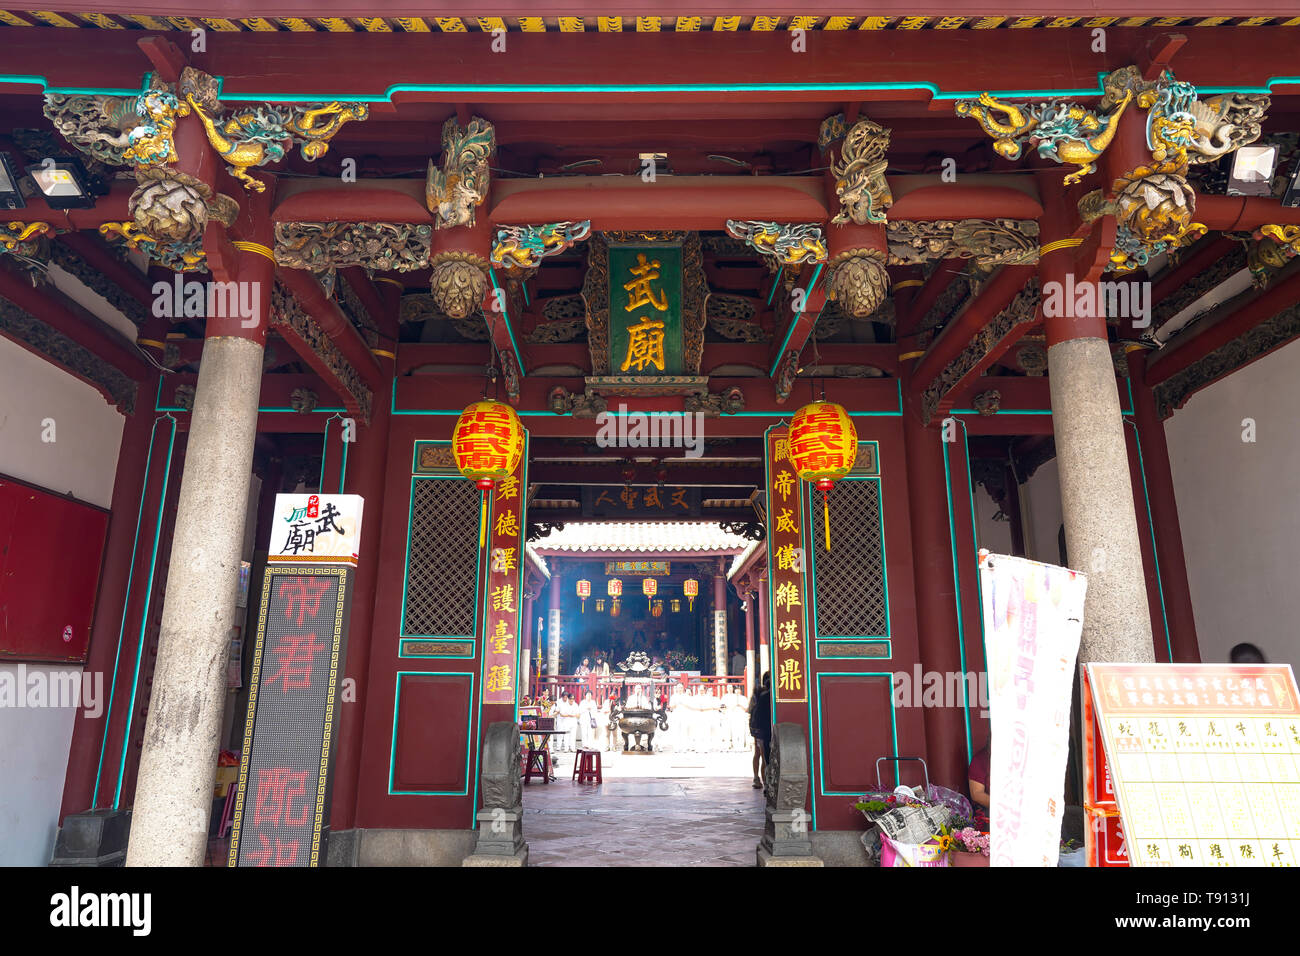 Tempio di stato delle arti marziali Dio, chiamato anche Tainan Riti Sacrificali Tempio Marziale o Grand Guandi tempio è un tempio situato nella parte ovest del centro di distr Foto Stock